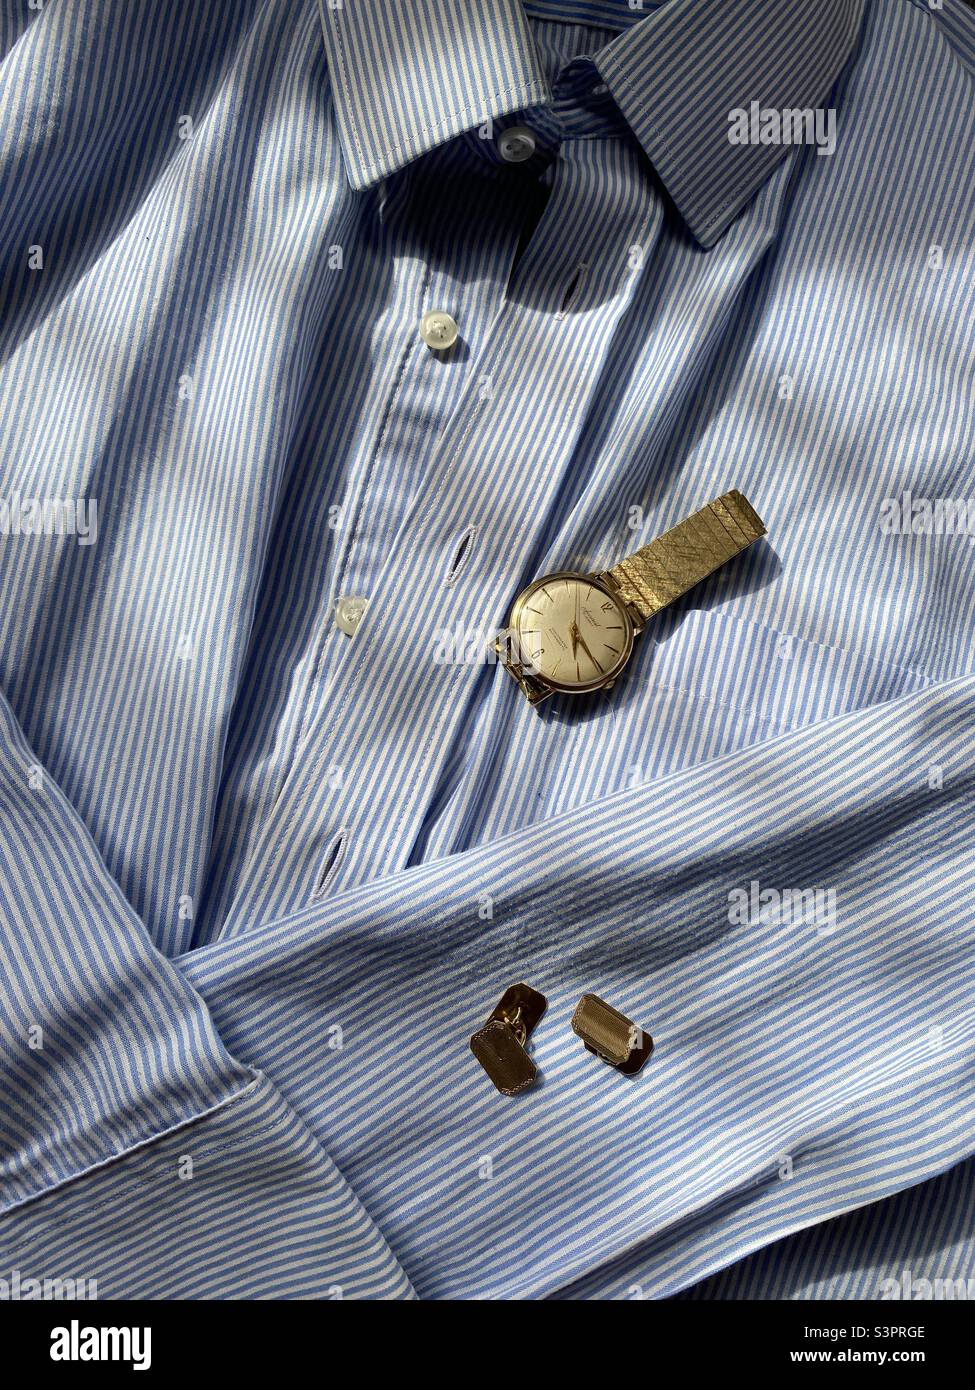 Elegante camisa de rayas azules y blancas para caballeros con dos accesorios: Un reloj de pulsera dorado y eslabones en forma de puño dorados, todo ello al sol de la tarde listo para usar. Foto de stock